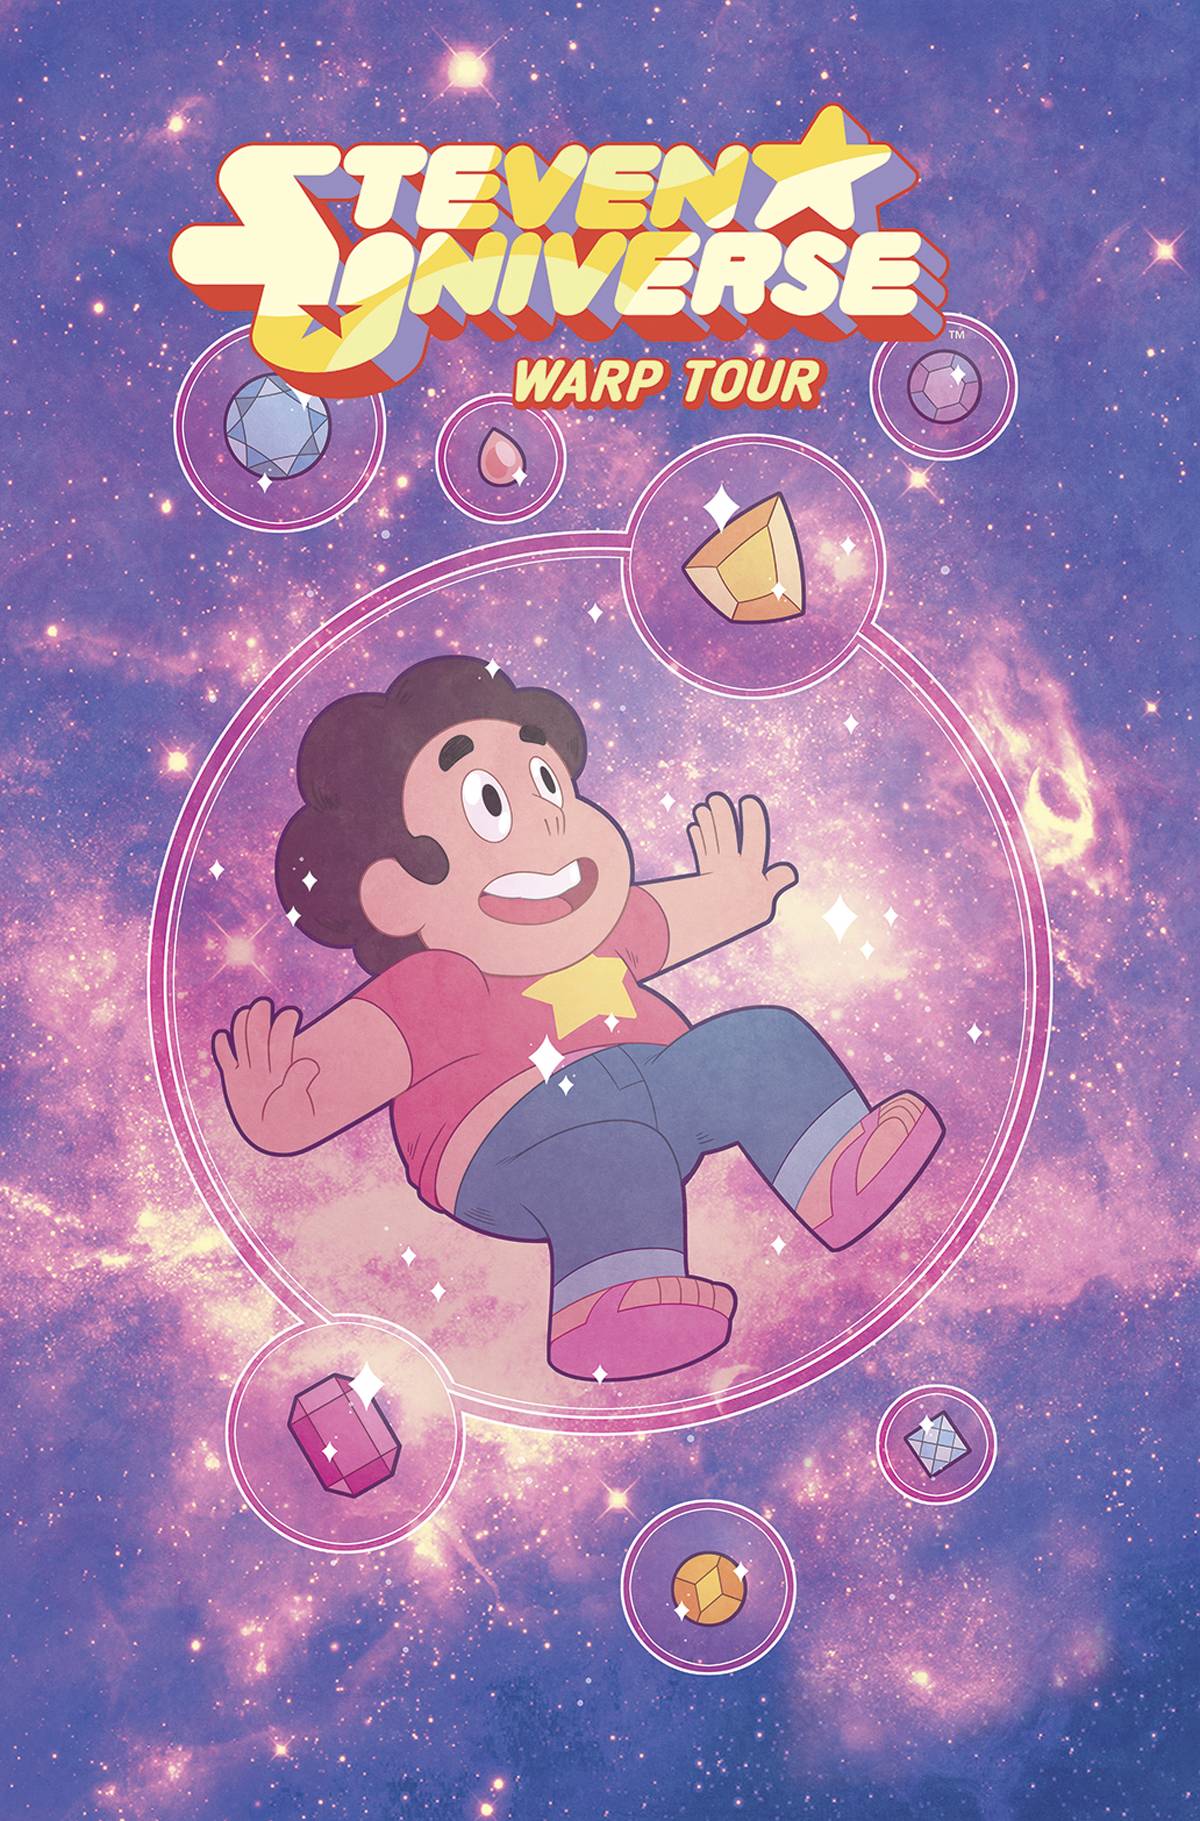 Steven Universe TPB Vol 1 Warp Tour